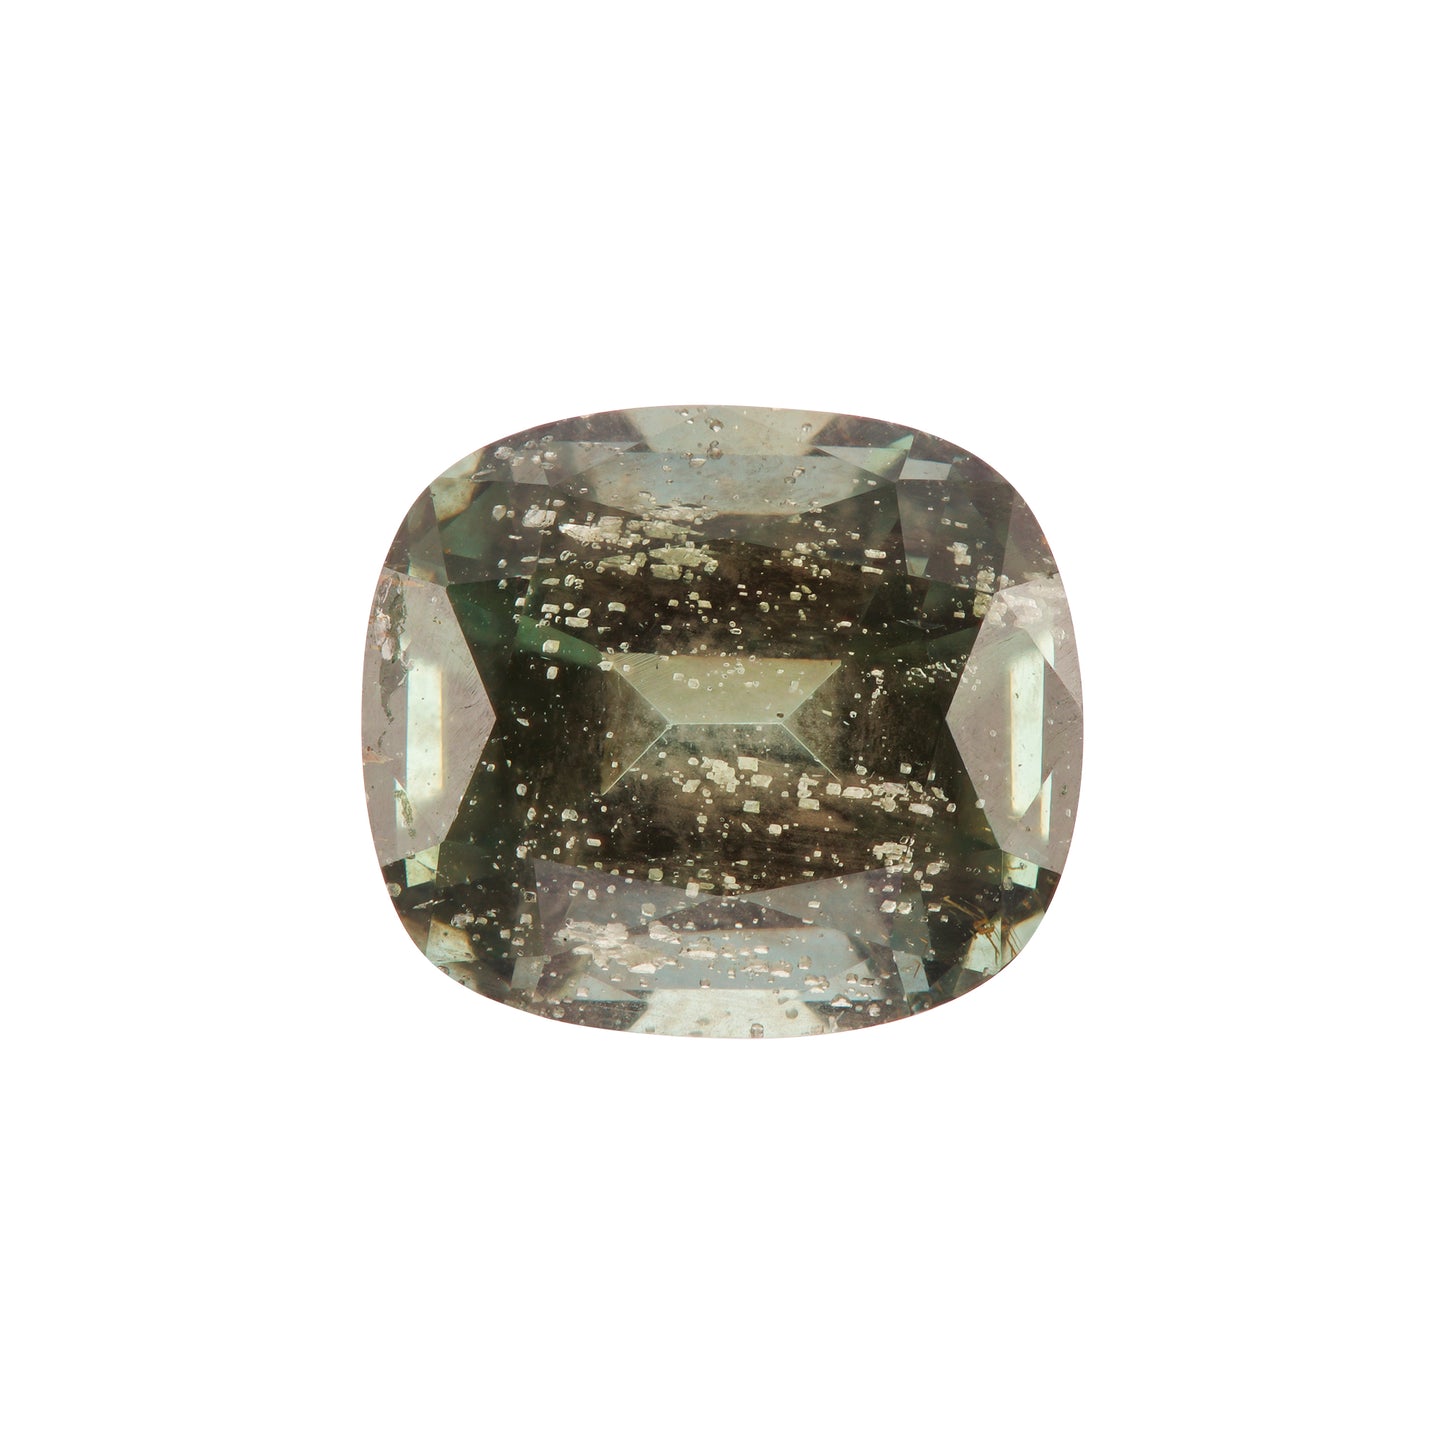 Saphir, Grau-Grün, Kissen, 2,10 ct. 6,3x7,3 mm